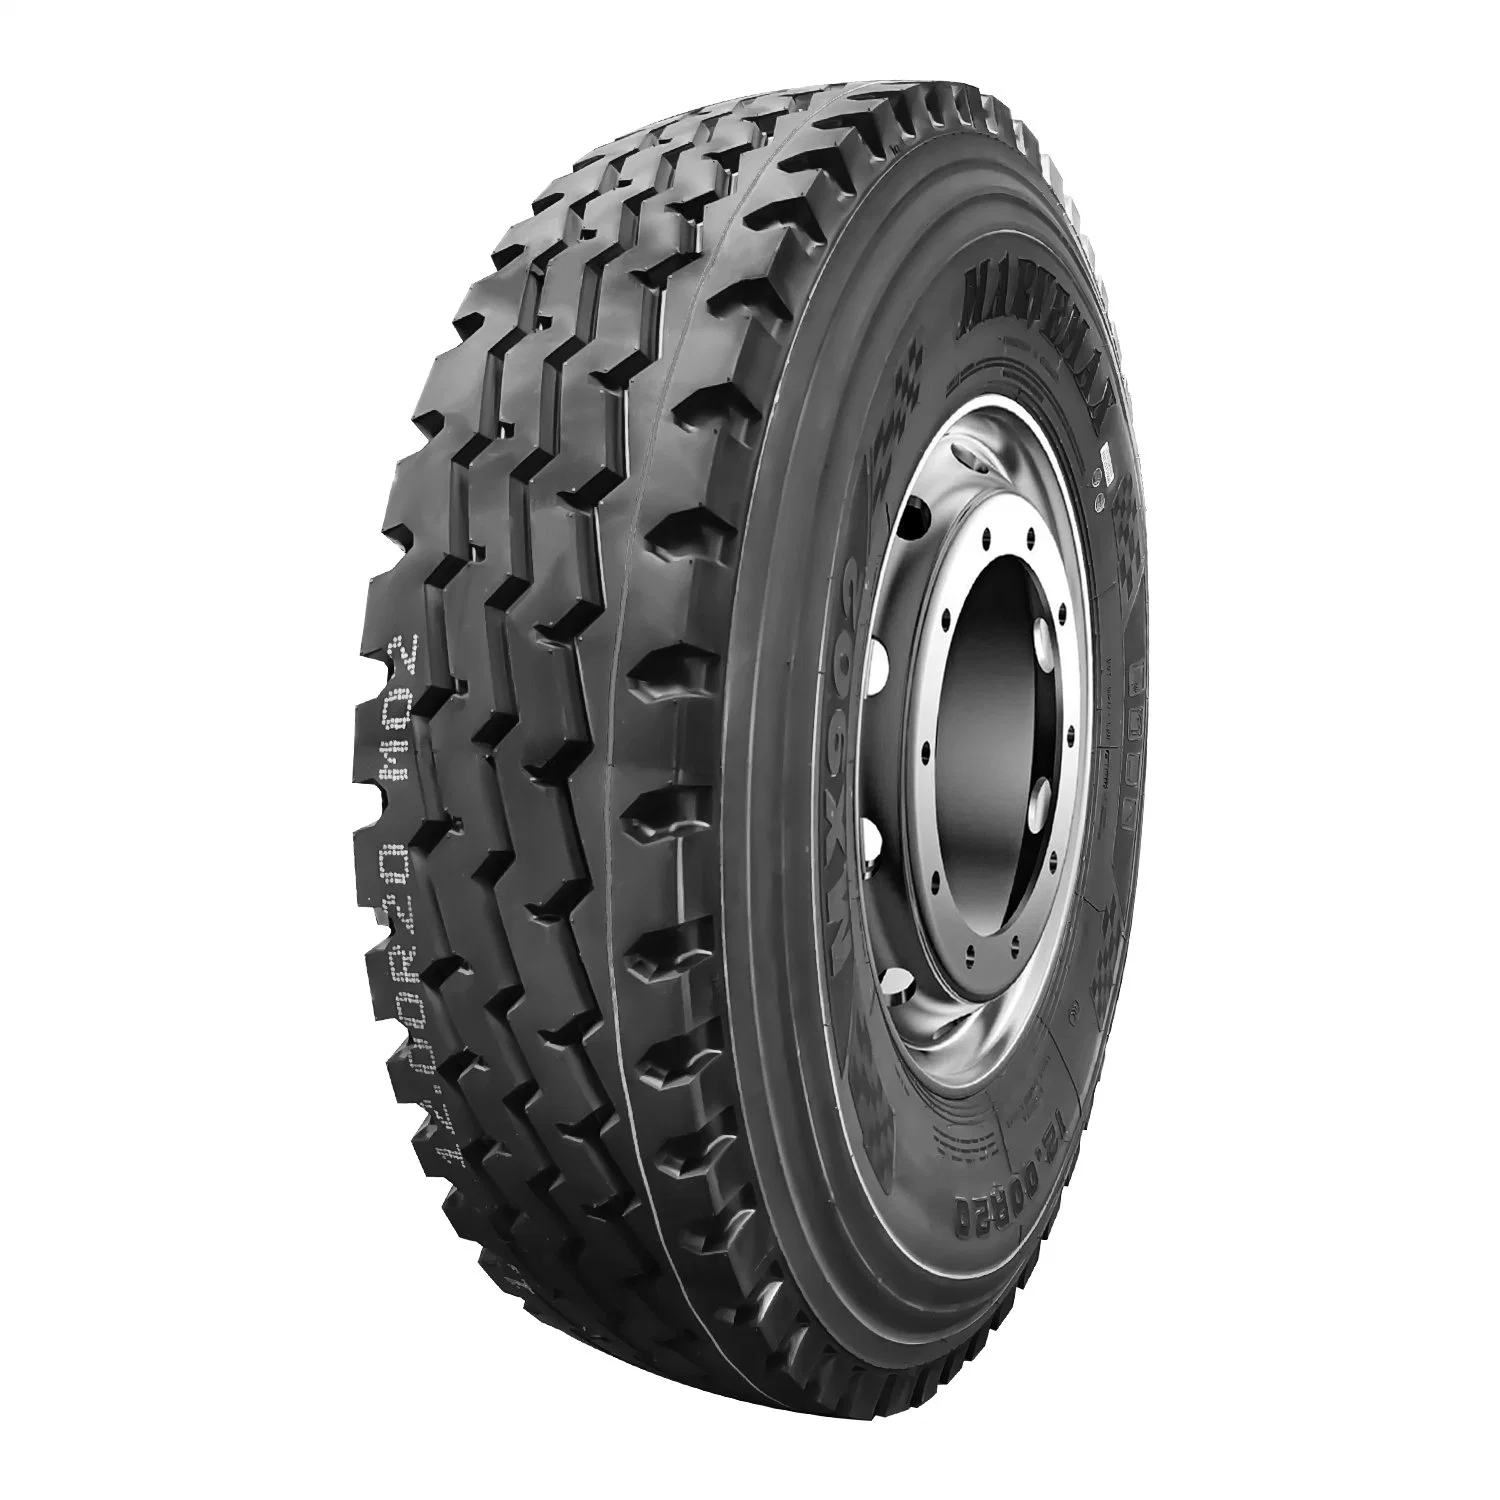 TBR Neumáticos Neumáticos para Camiones11.00R20 El neumático de repuesto de autobuses y camiones neumático radial